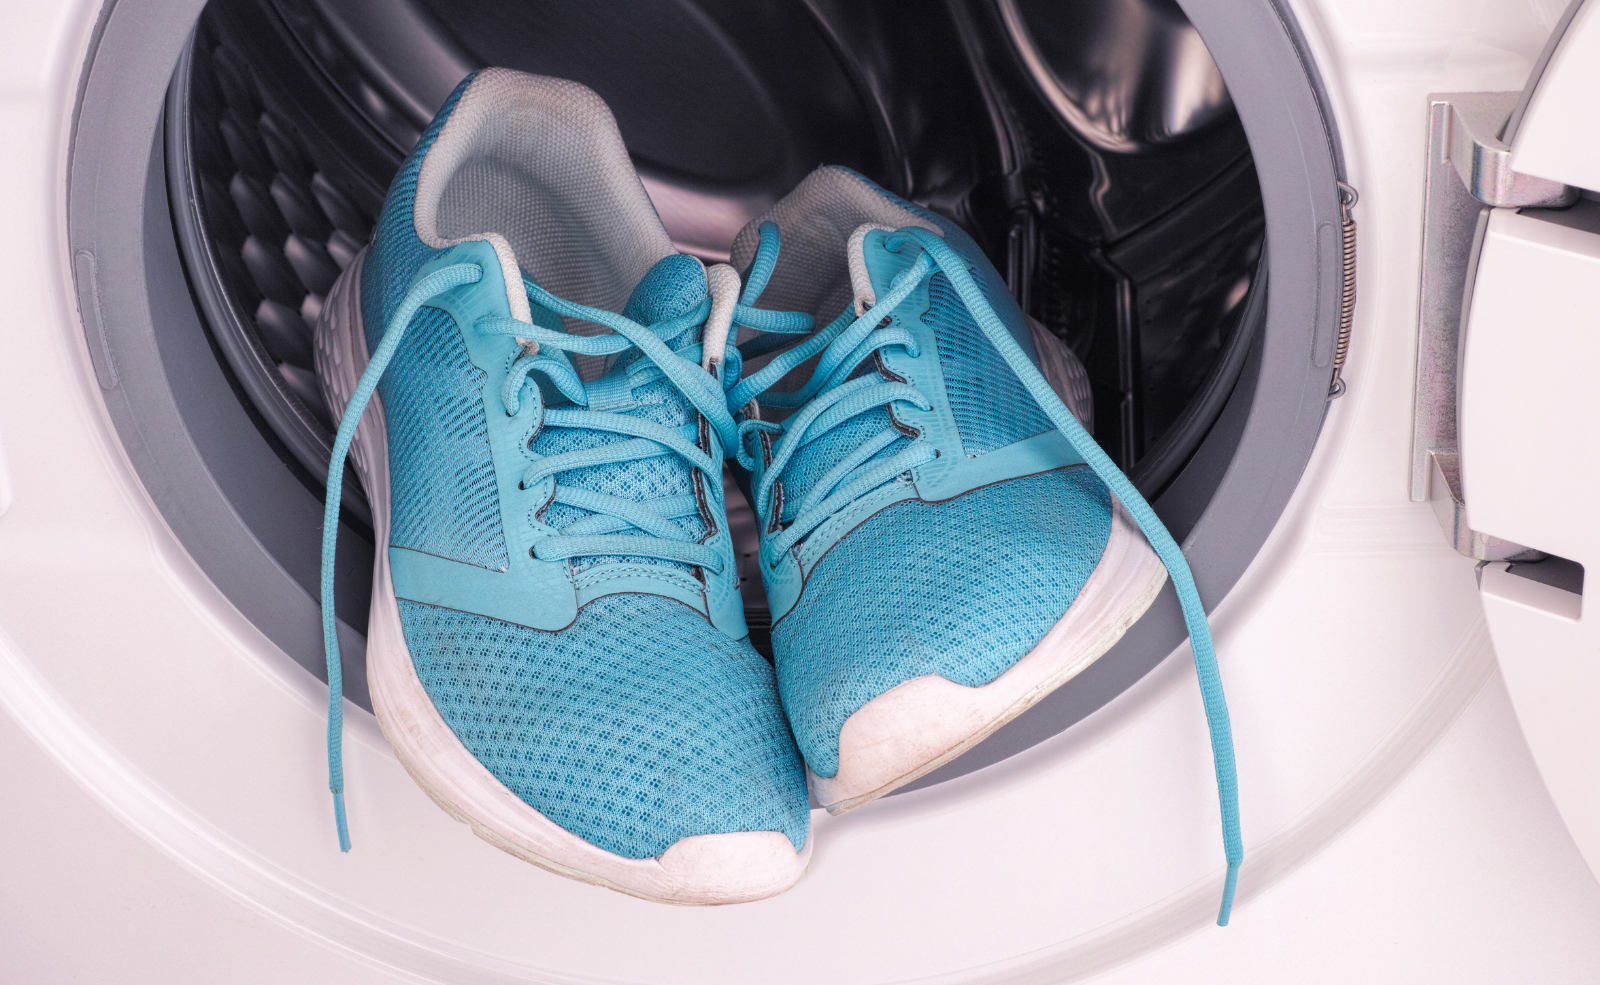 Schuhe in der Waschmaschine waschen: Anleitung und Tipps